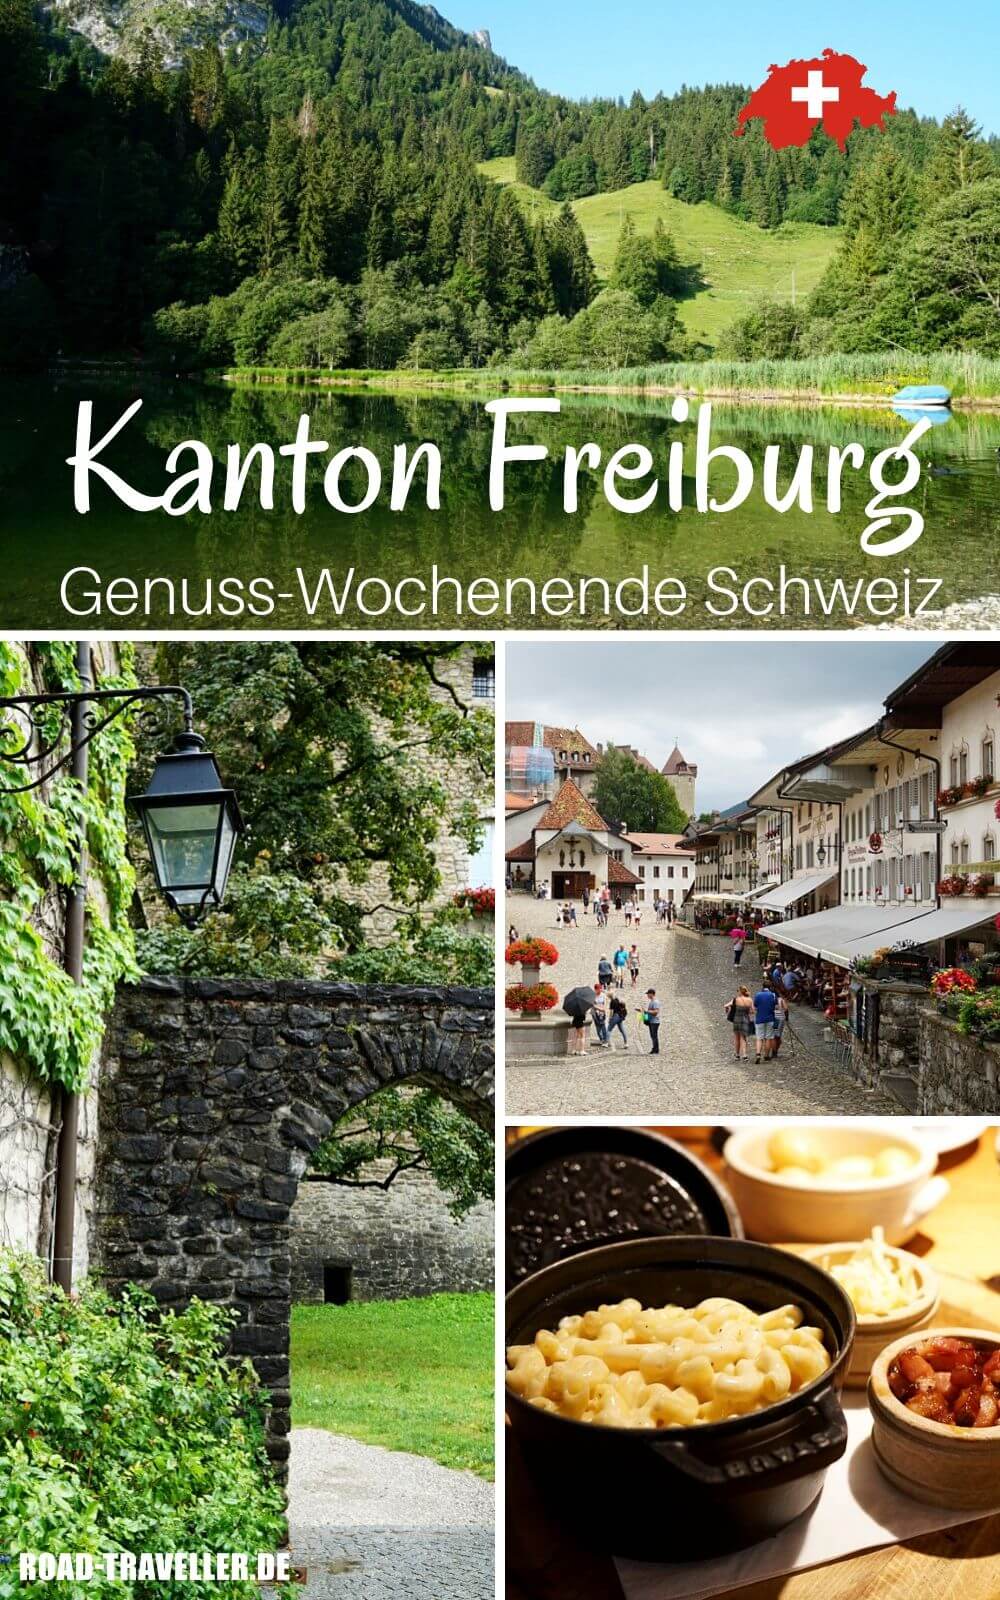 Wochenende im Kanton Freiburg und in der Region Gruyere mit Wandern und Geniessen